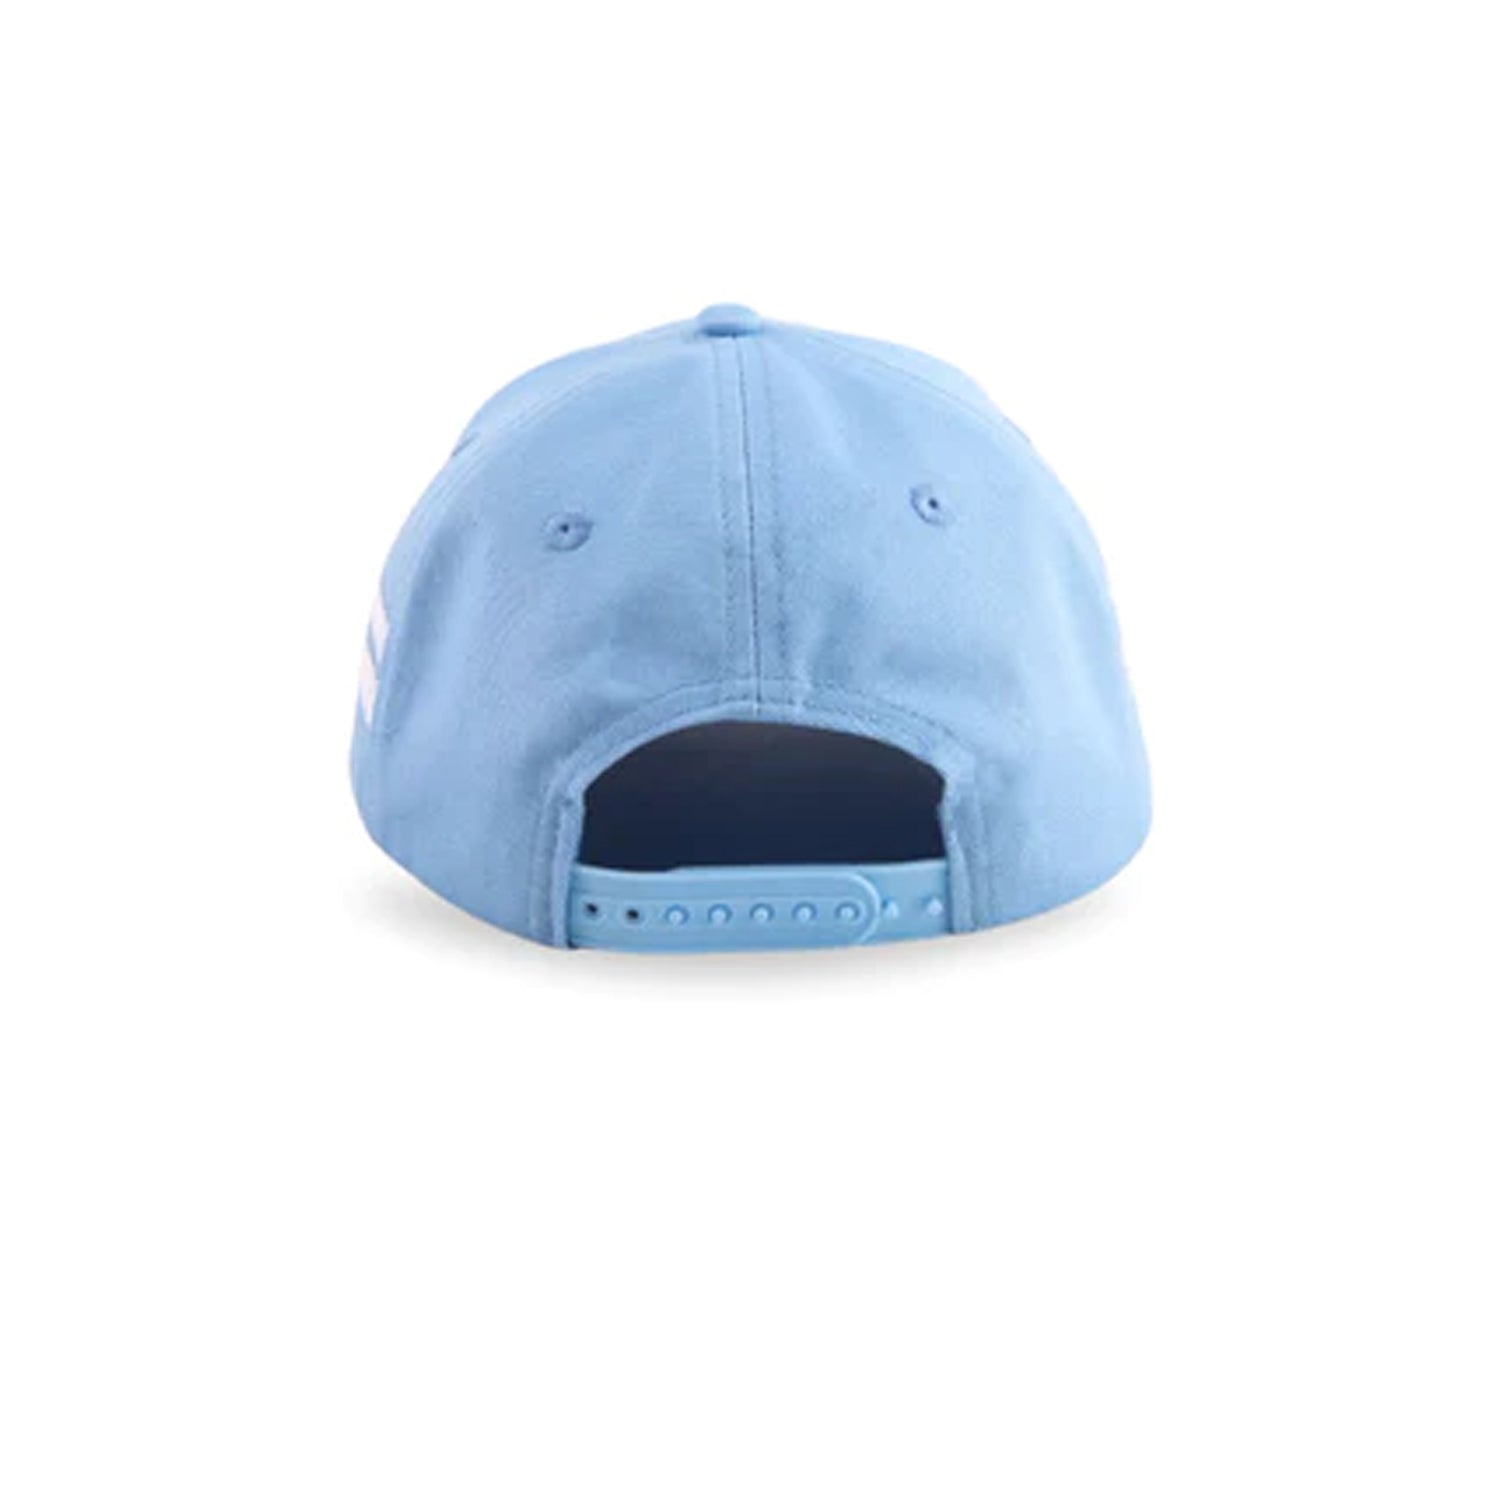 BABY BLUE BASEBALL CAP FROM HOUSE OF CENMAR